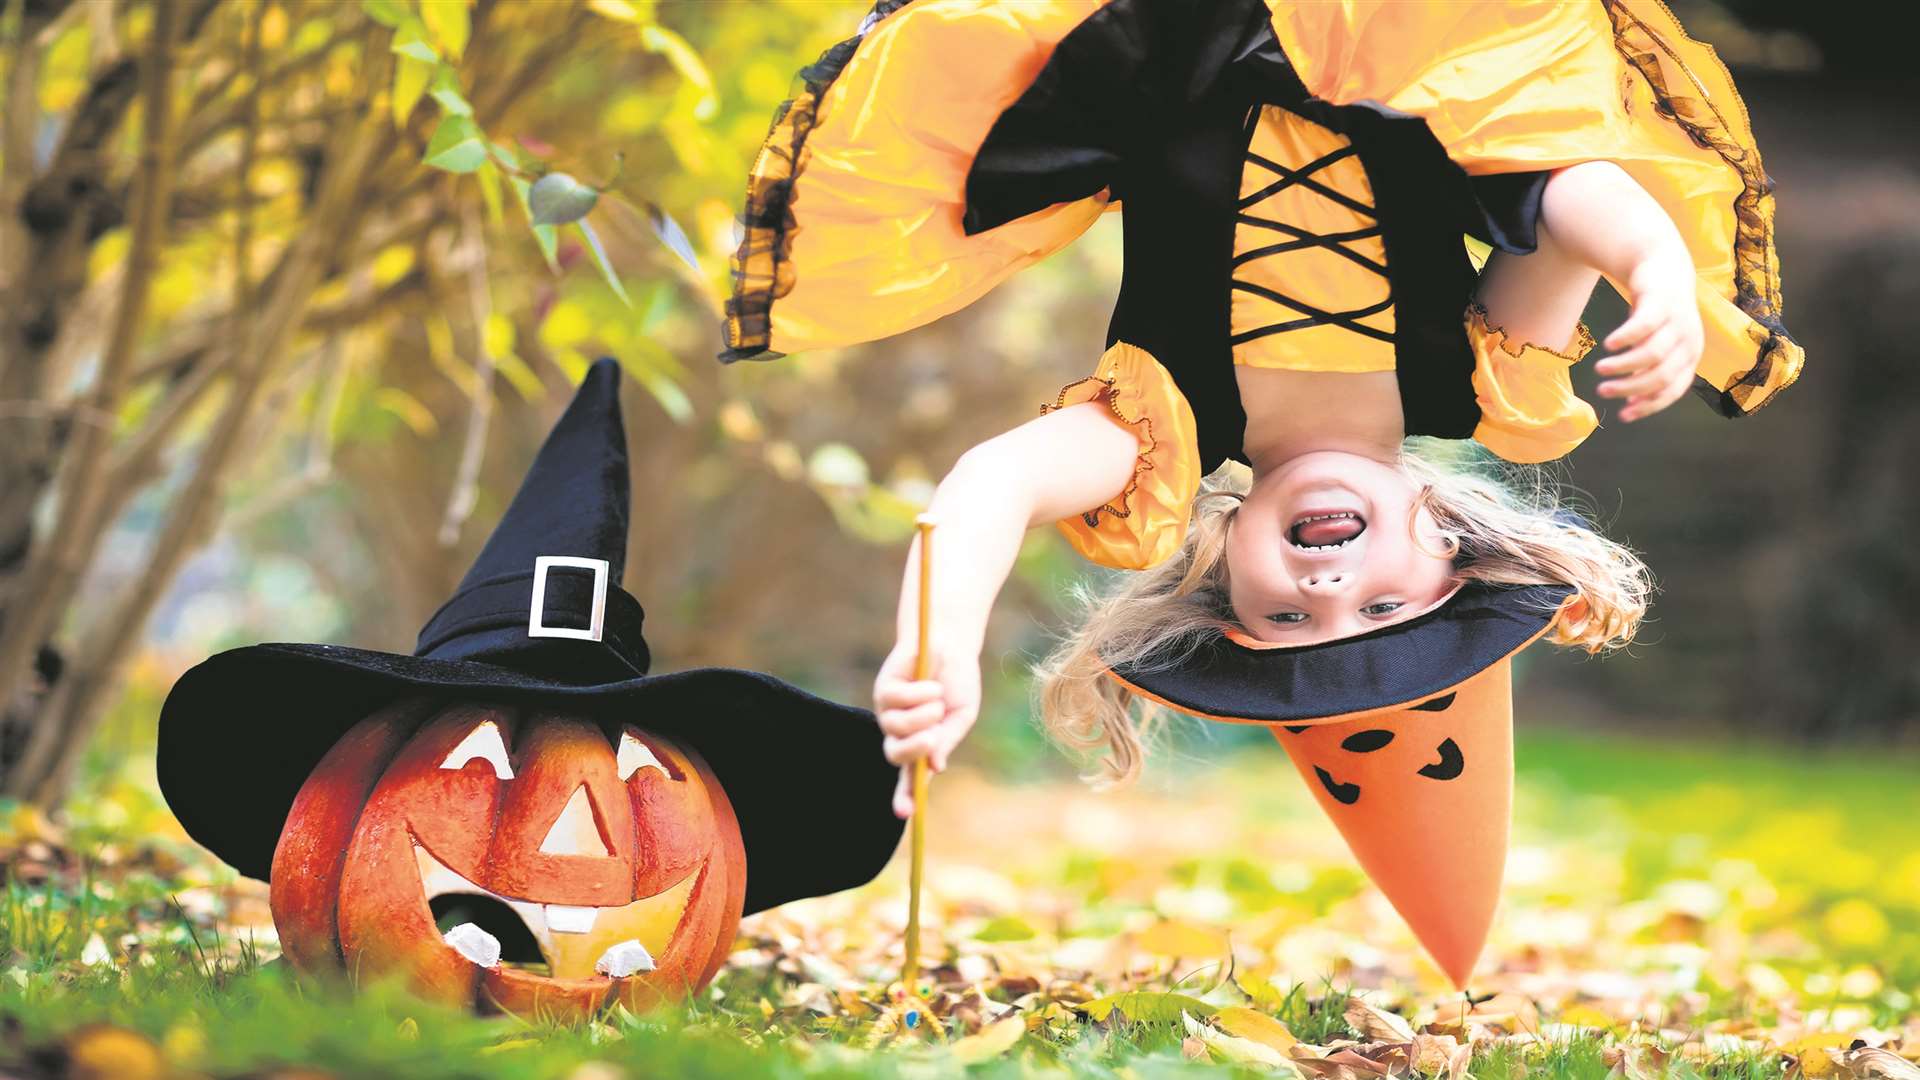 October half term fun across Kent includes plenty of Halloween happenings